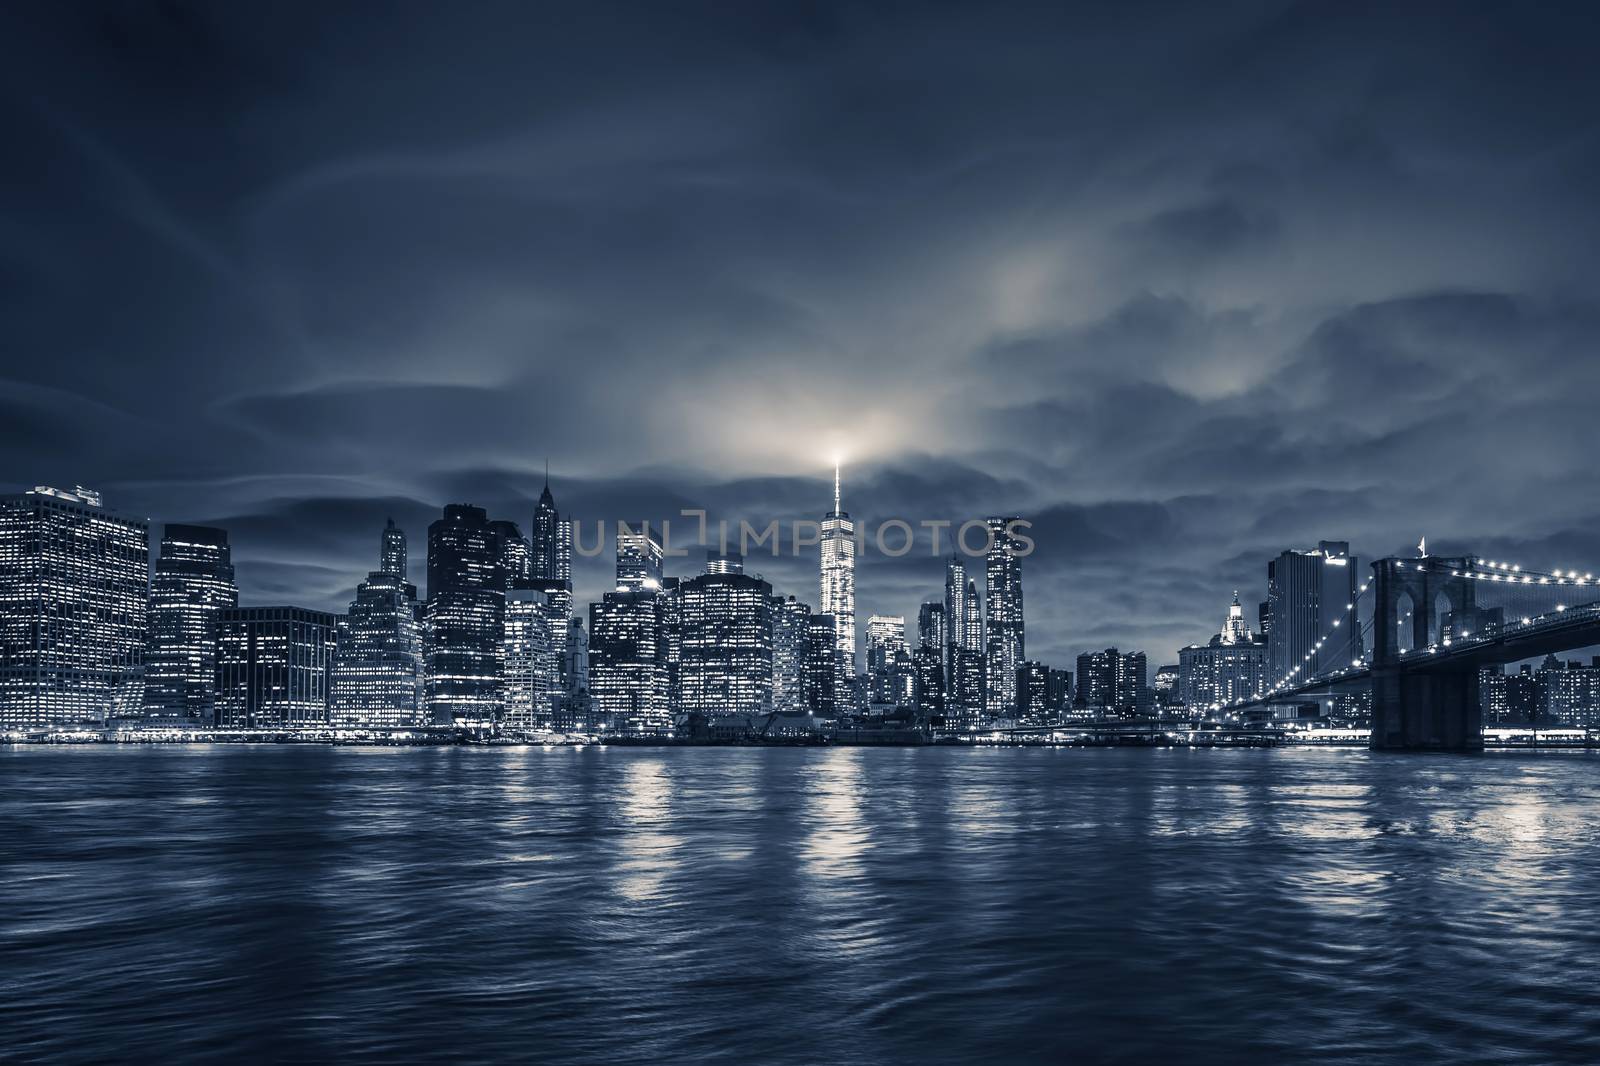 View of Manhattan at night, New York City. 